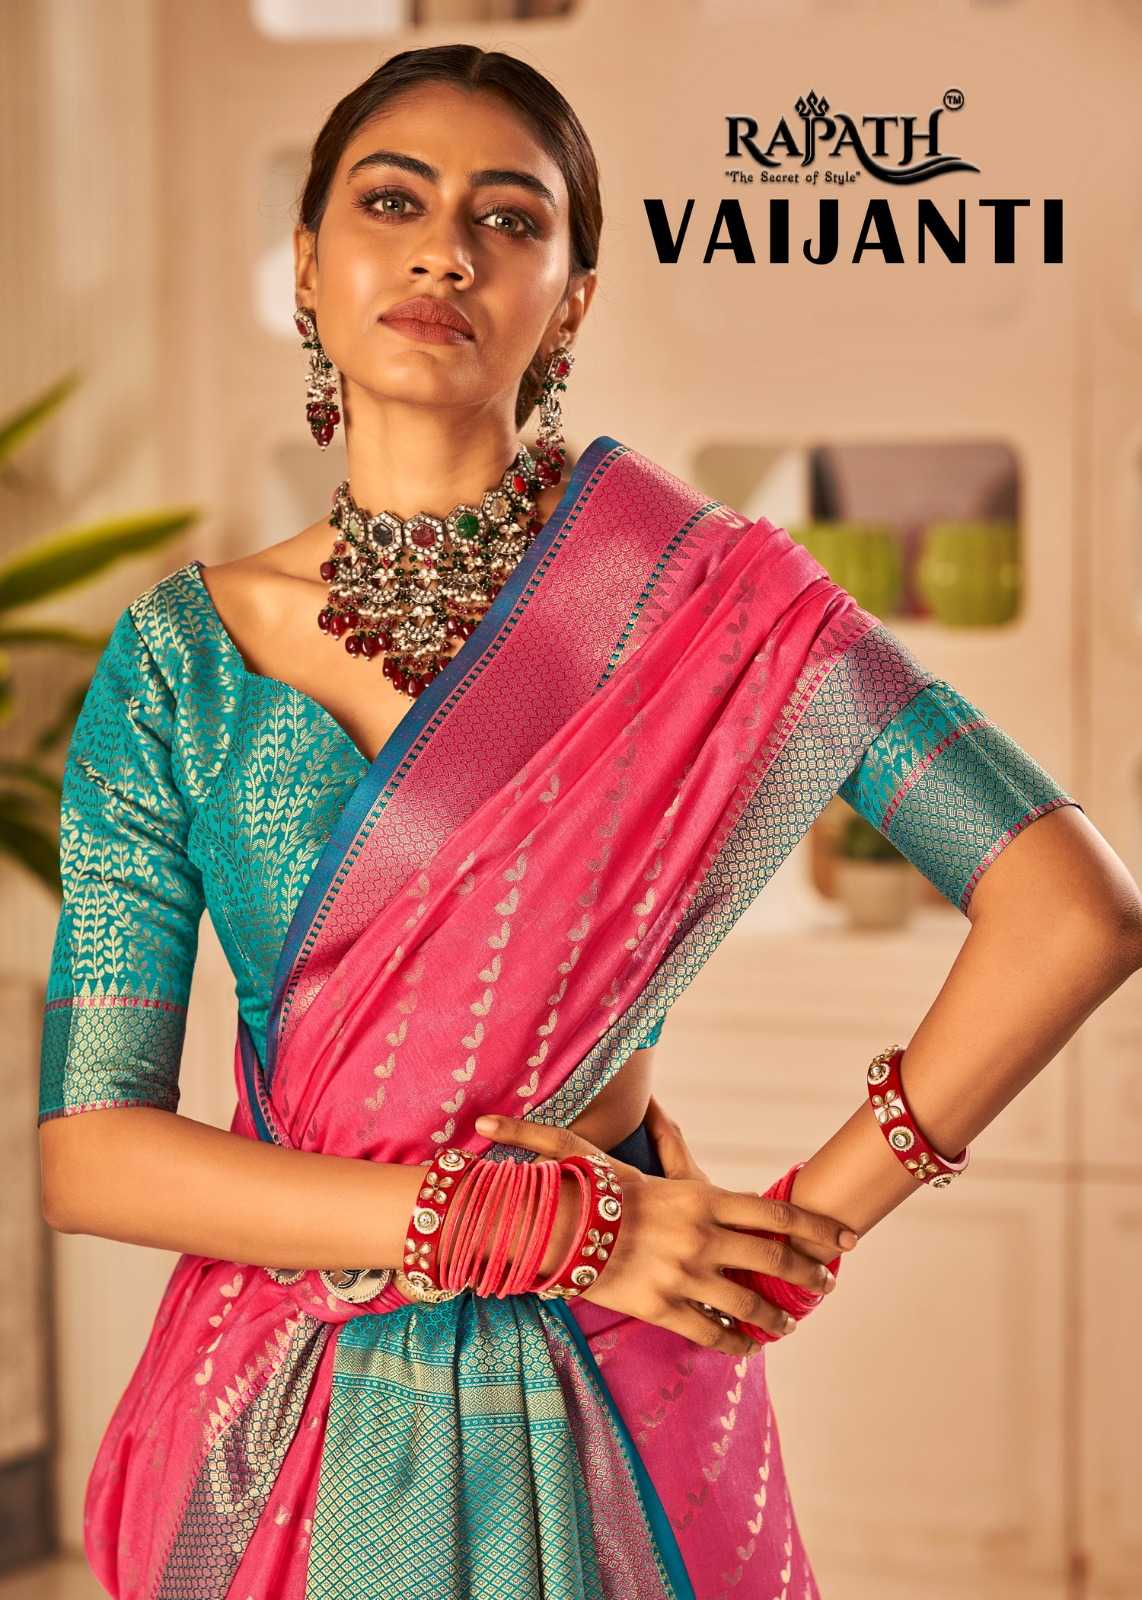 rajpath vaijanti 172001-172006 series beautiful banarasi silk weaving sarees 